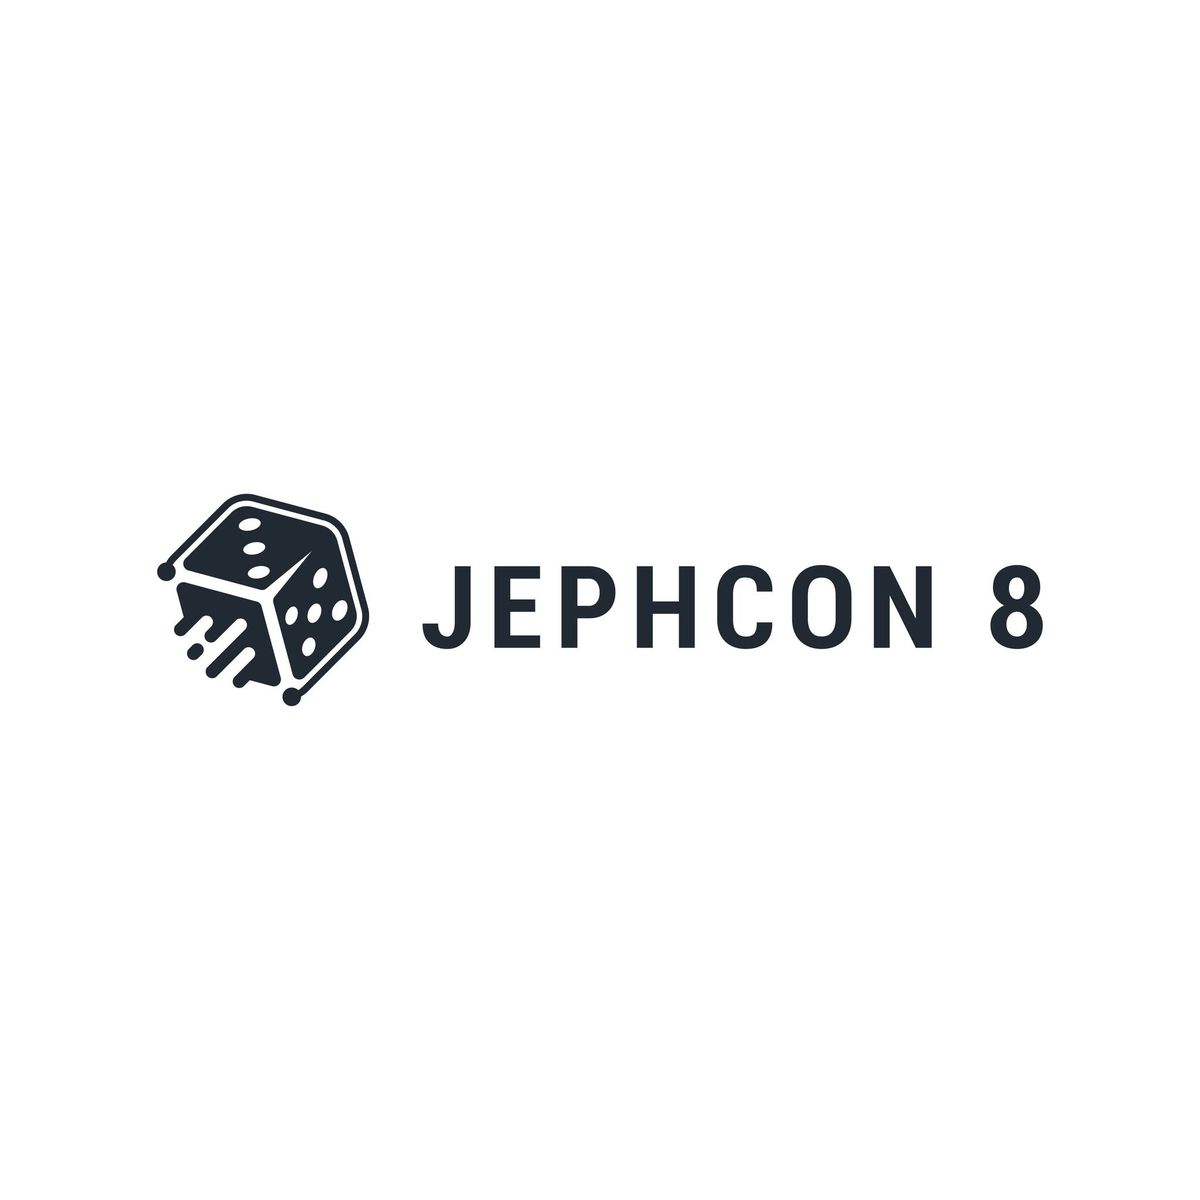 JephCon 8